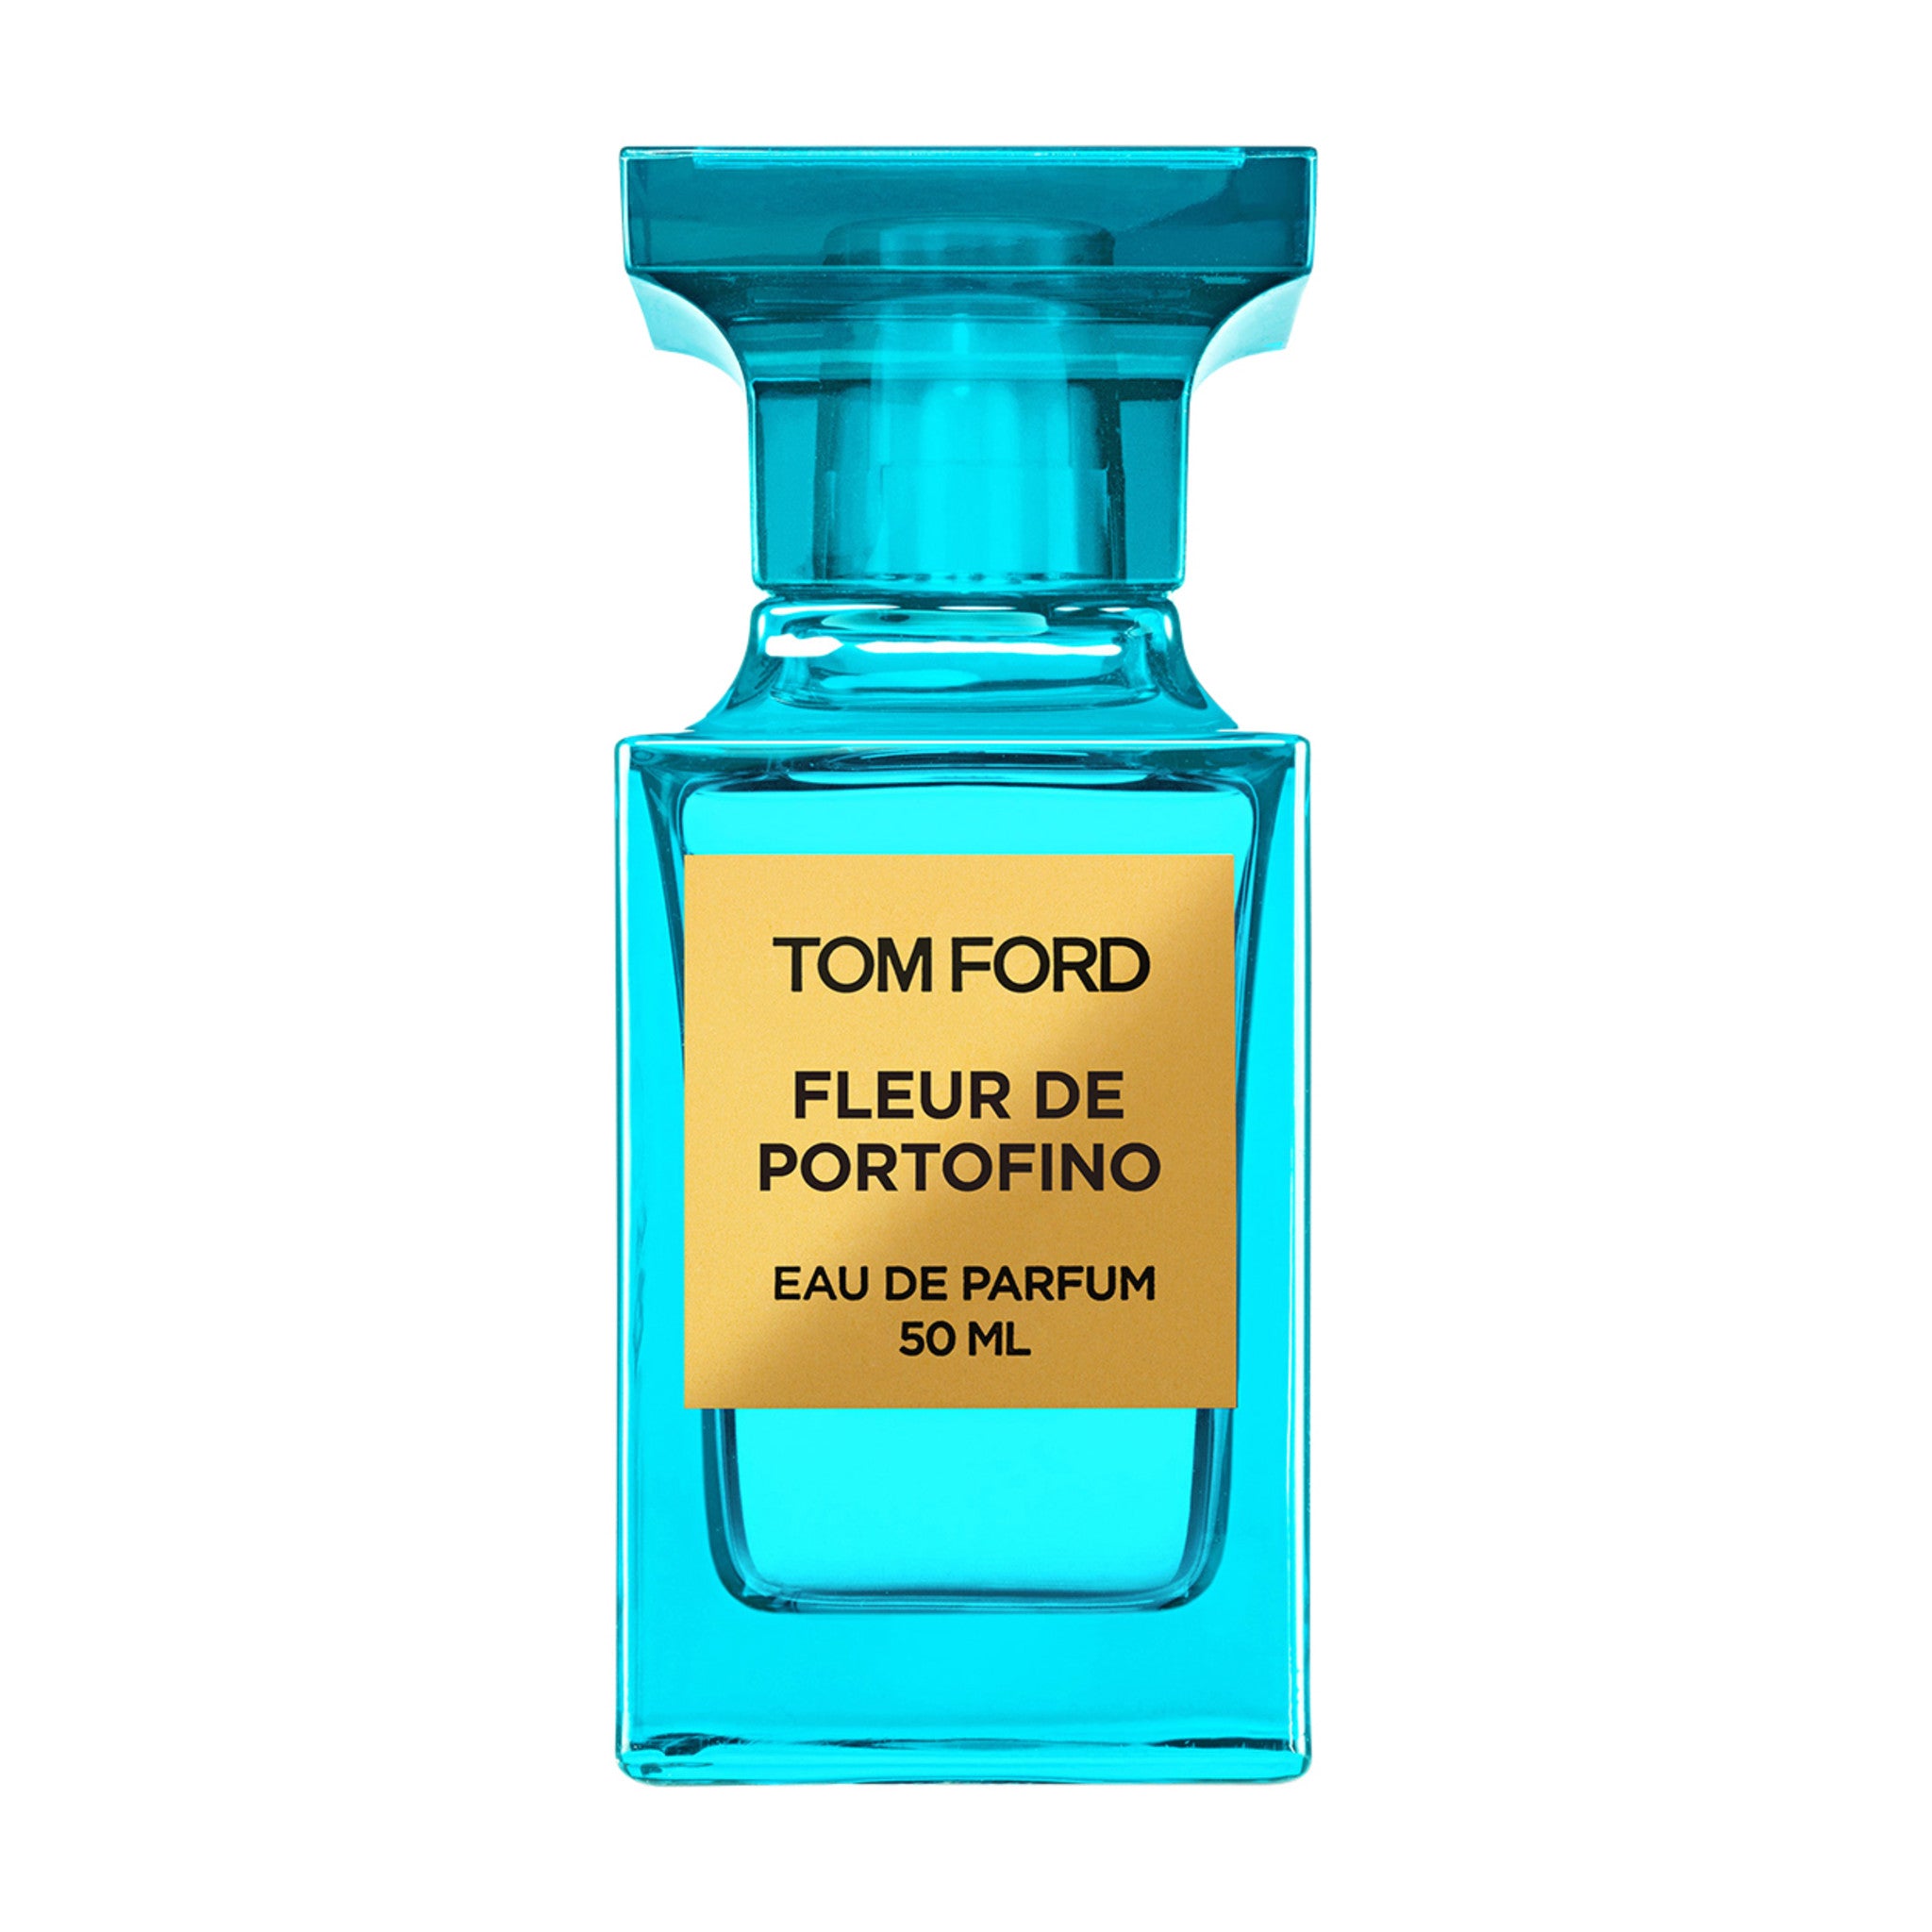 Tom Ford Fleur de Portofino 1.7 oz Eau de Parfum Spray